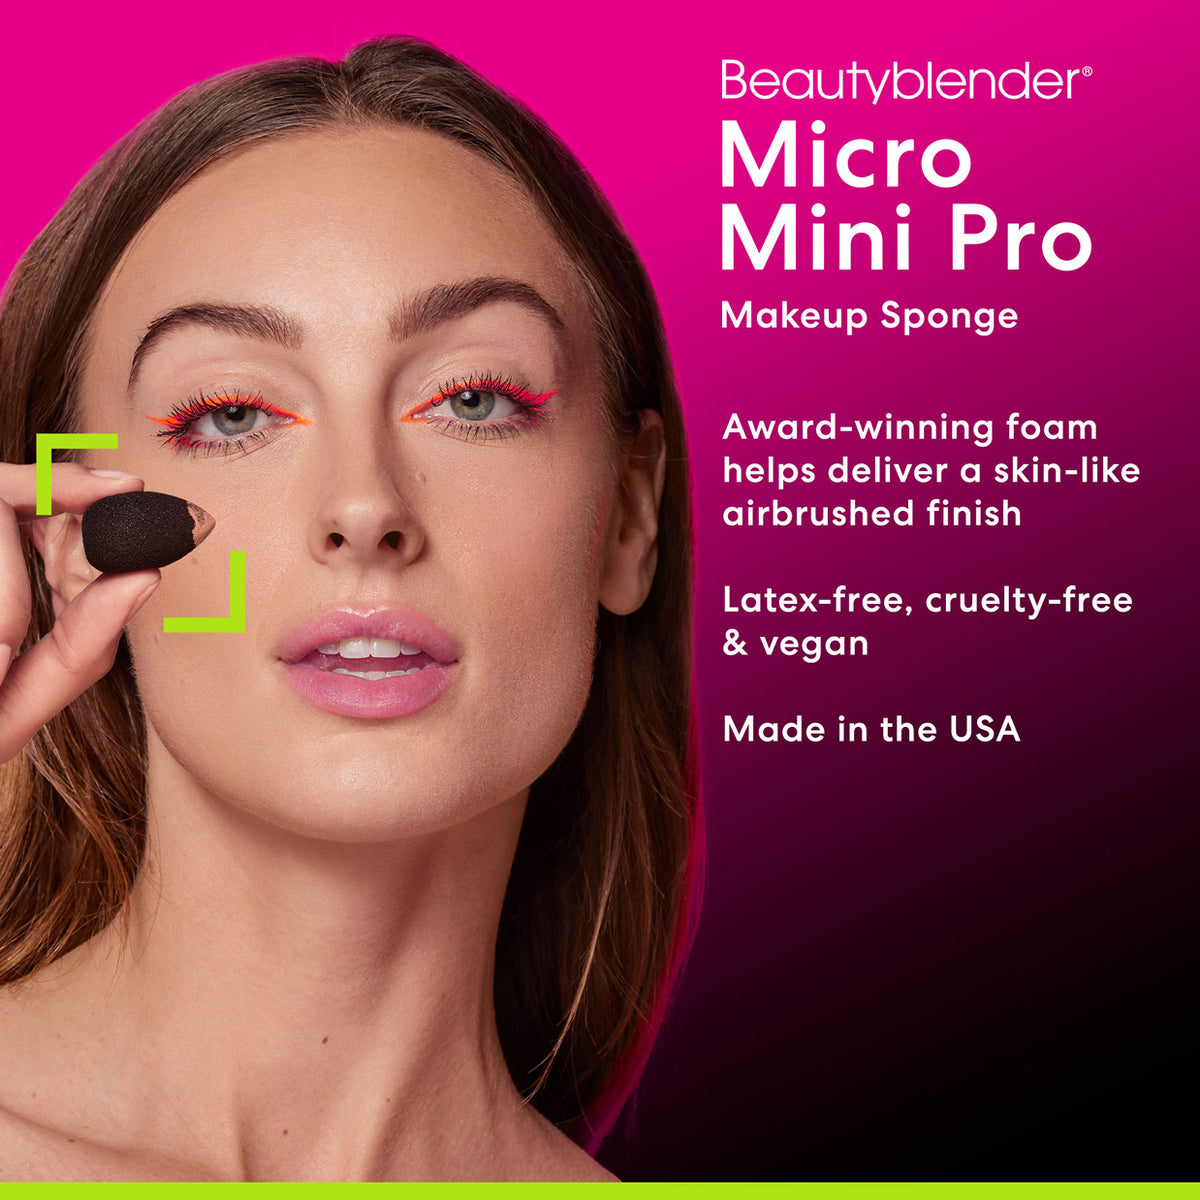 Micro Mini Pro Makeup Sponge.